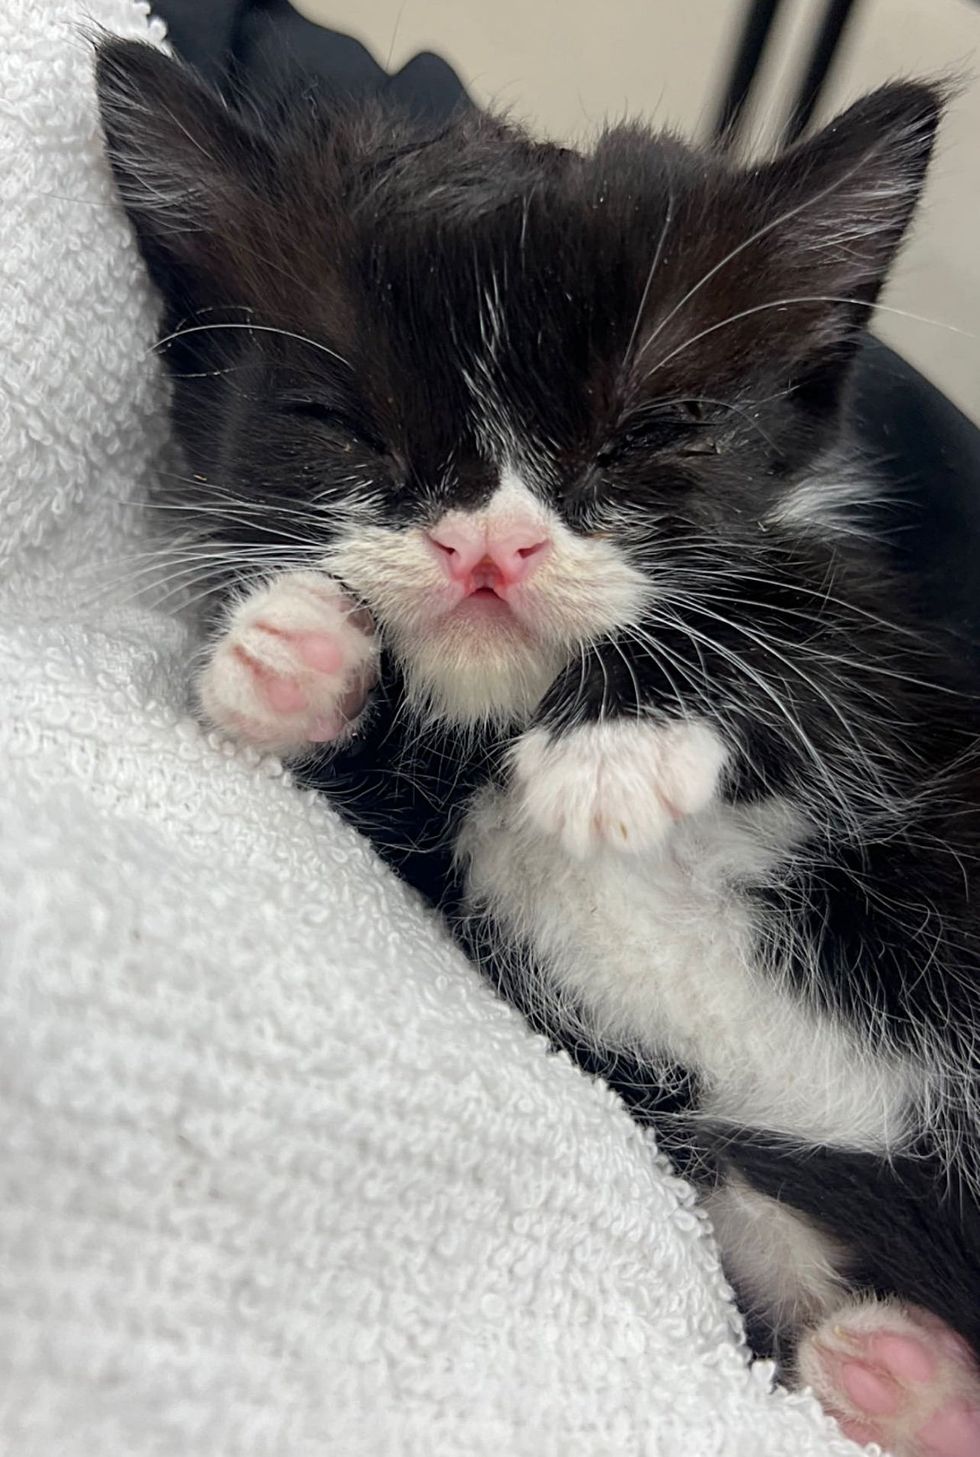 sleeping kitten cute tuxedo